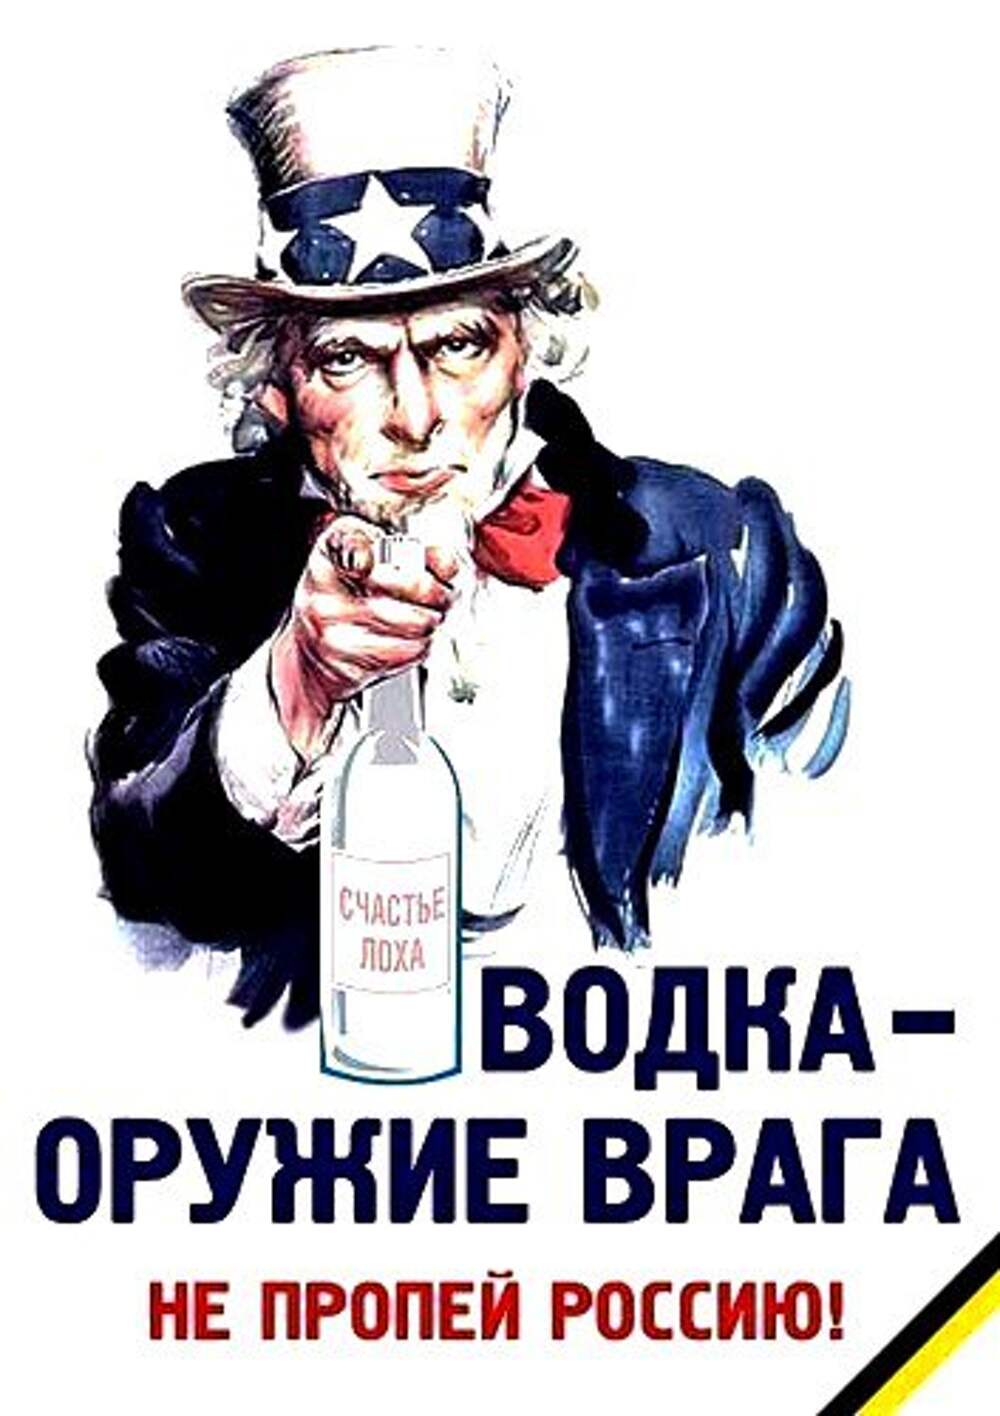 Плакат против алкоголя